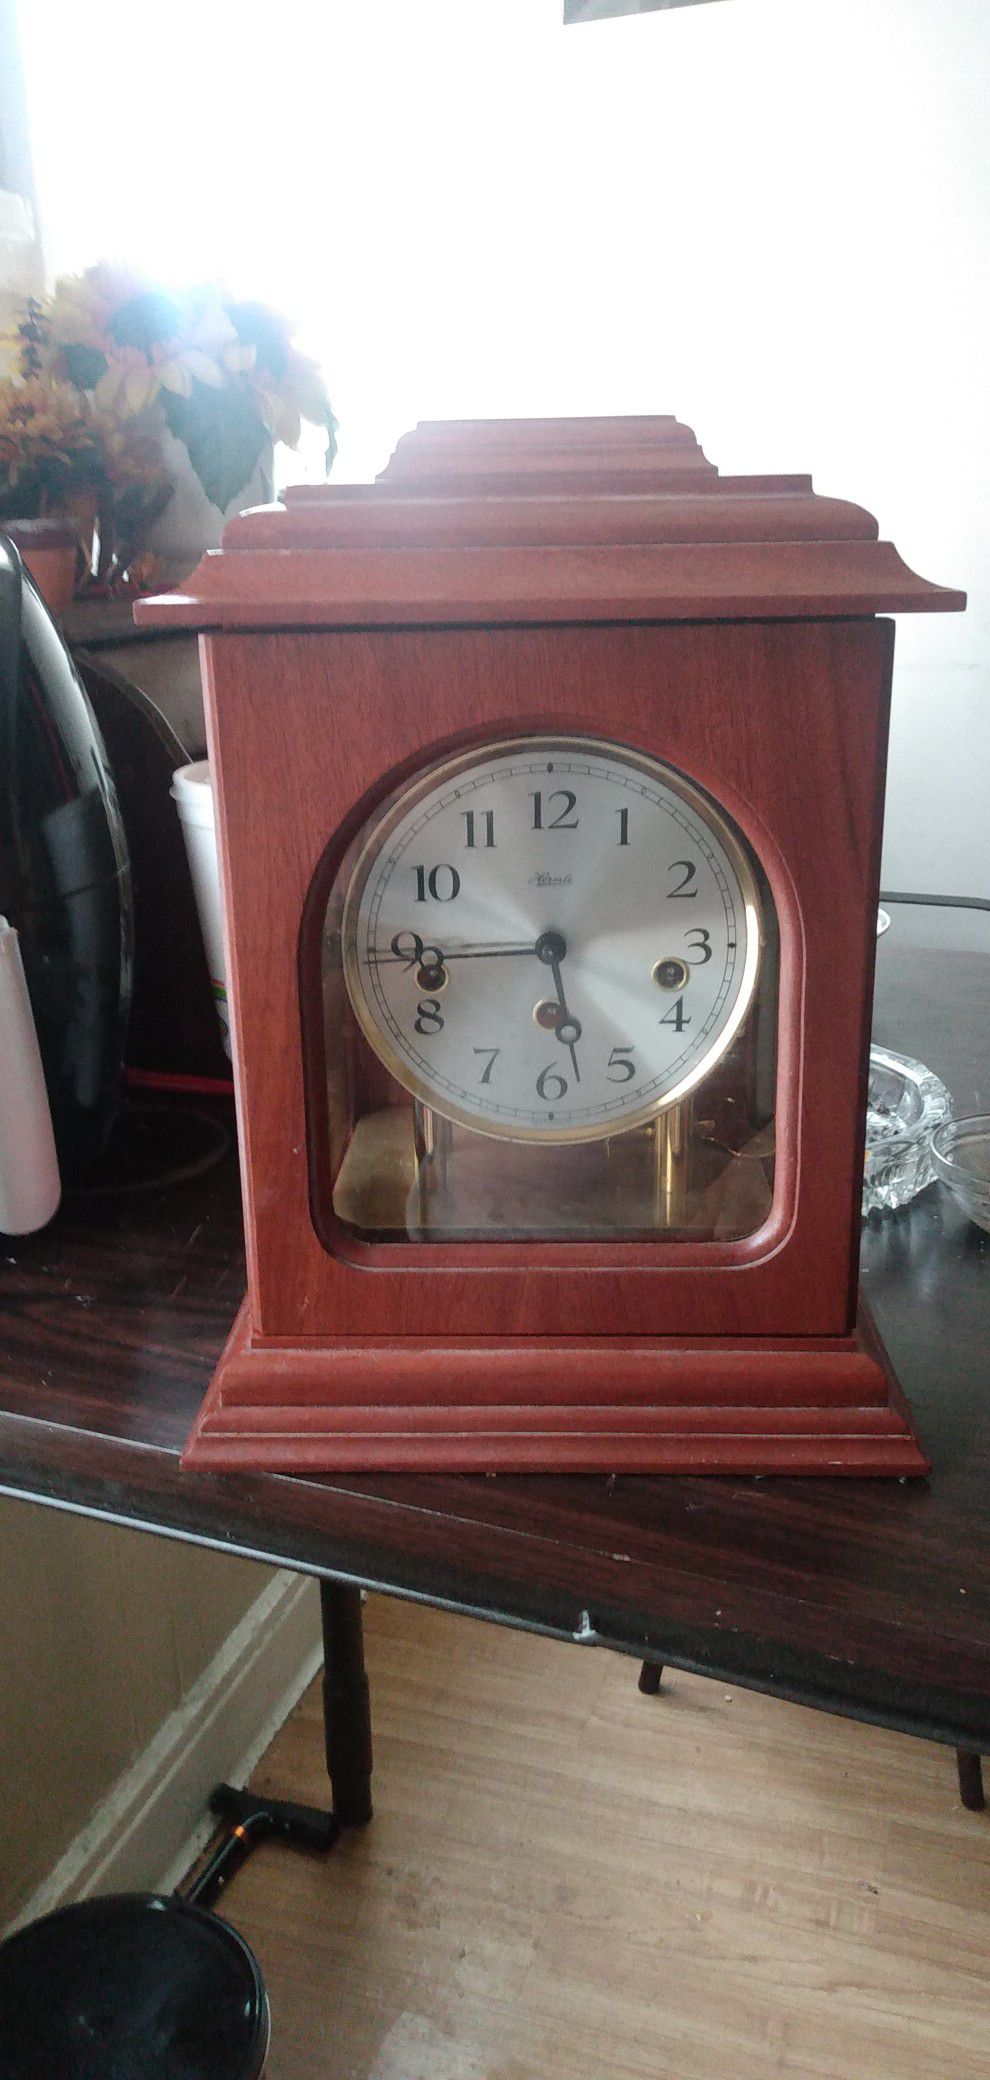 Franz hermle antique clock 340-070